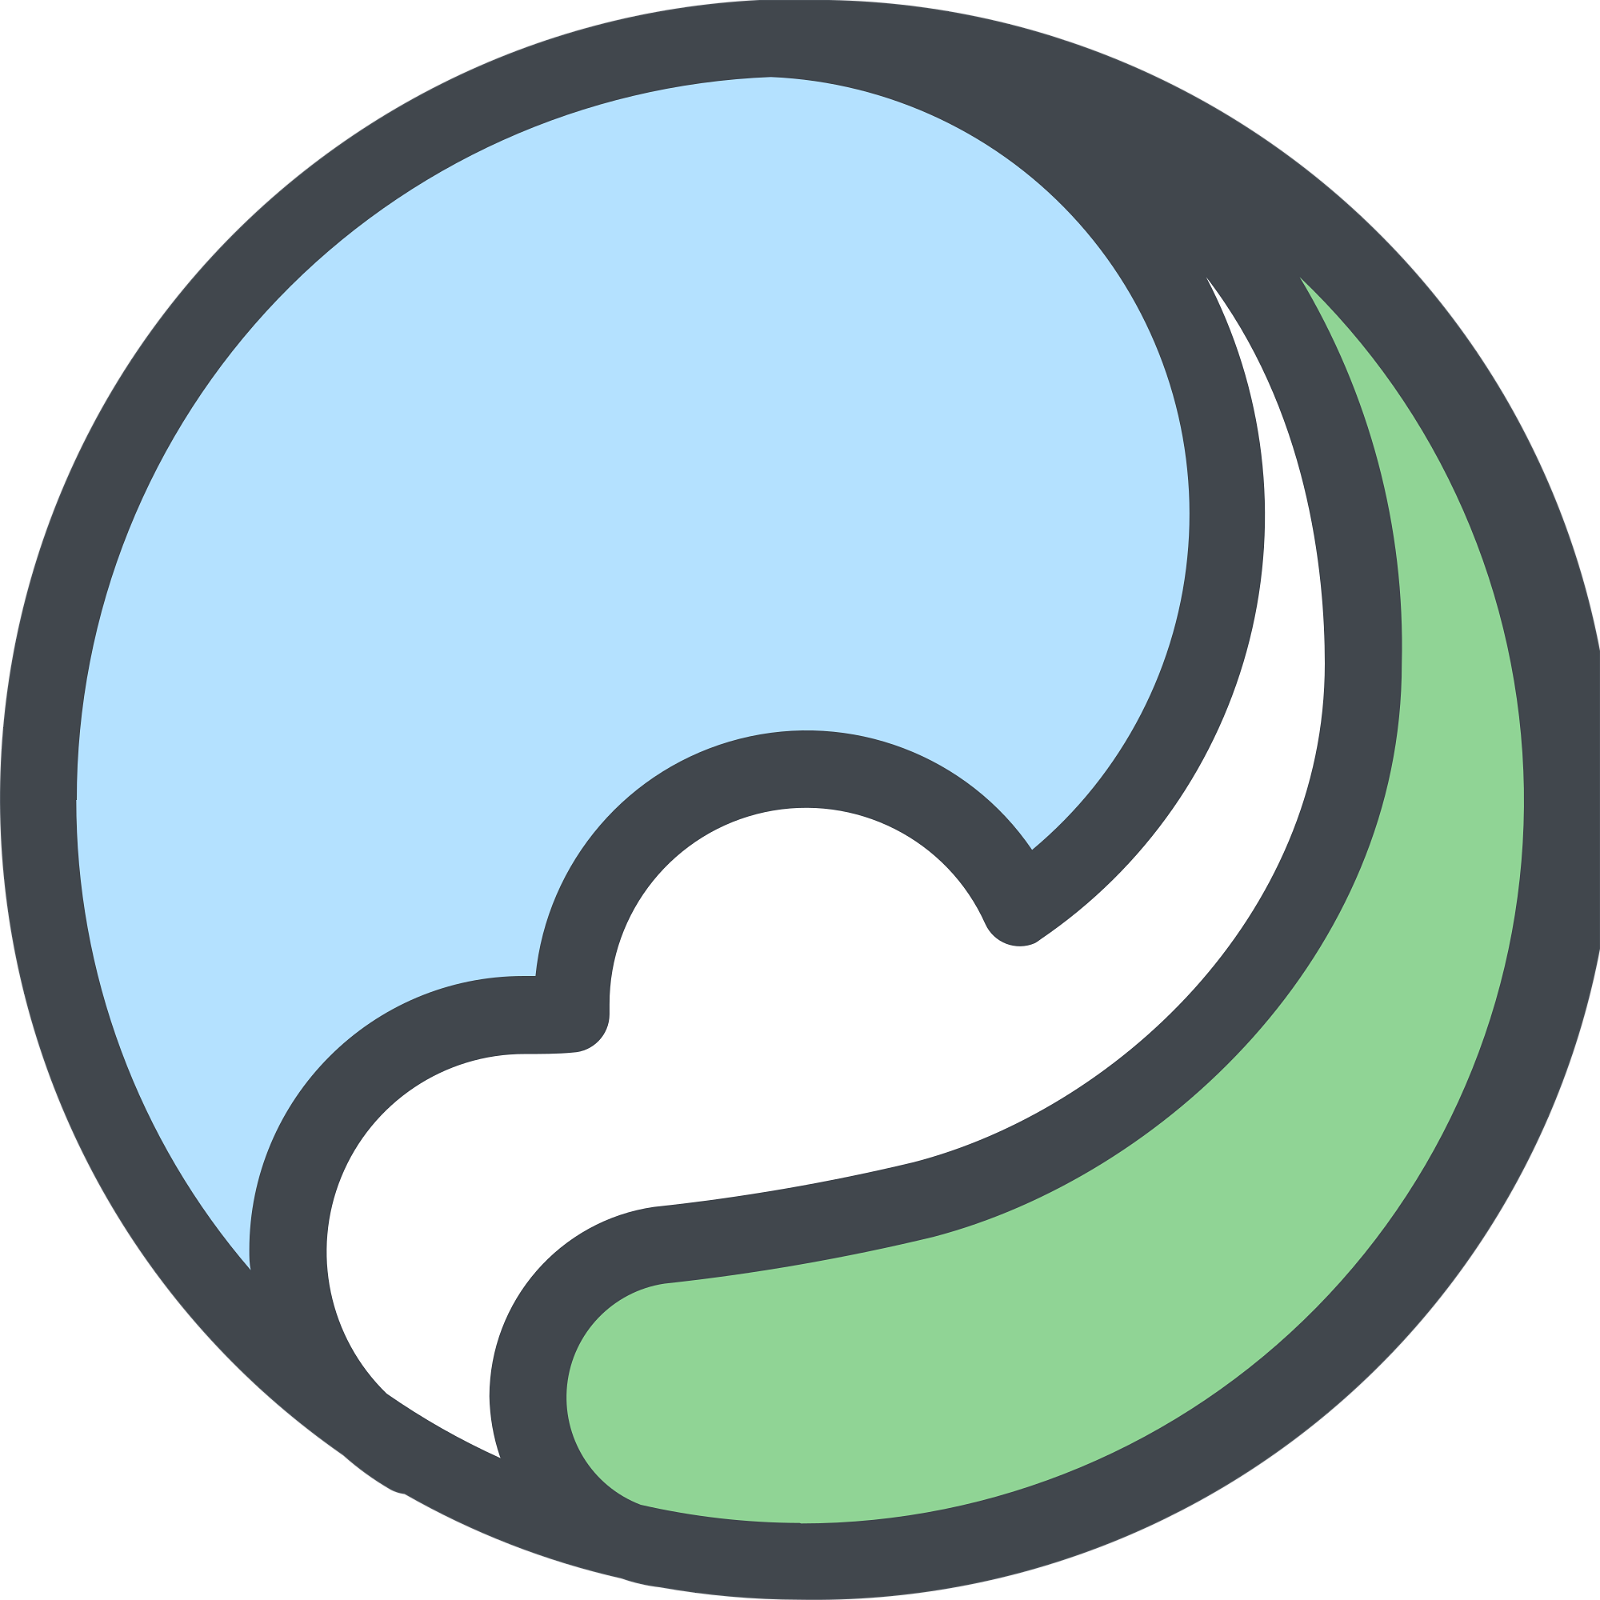 Perlin Logo